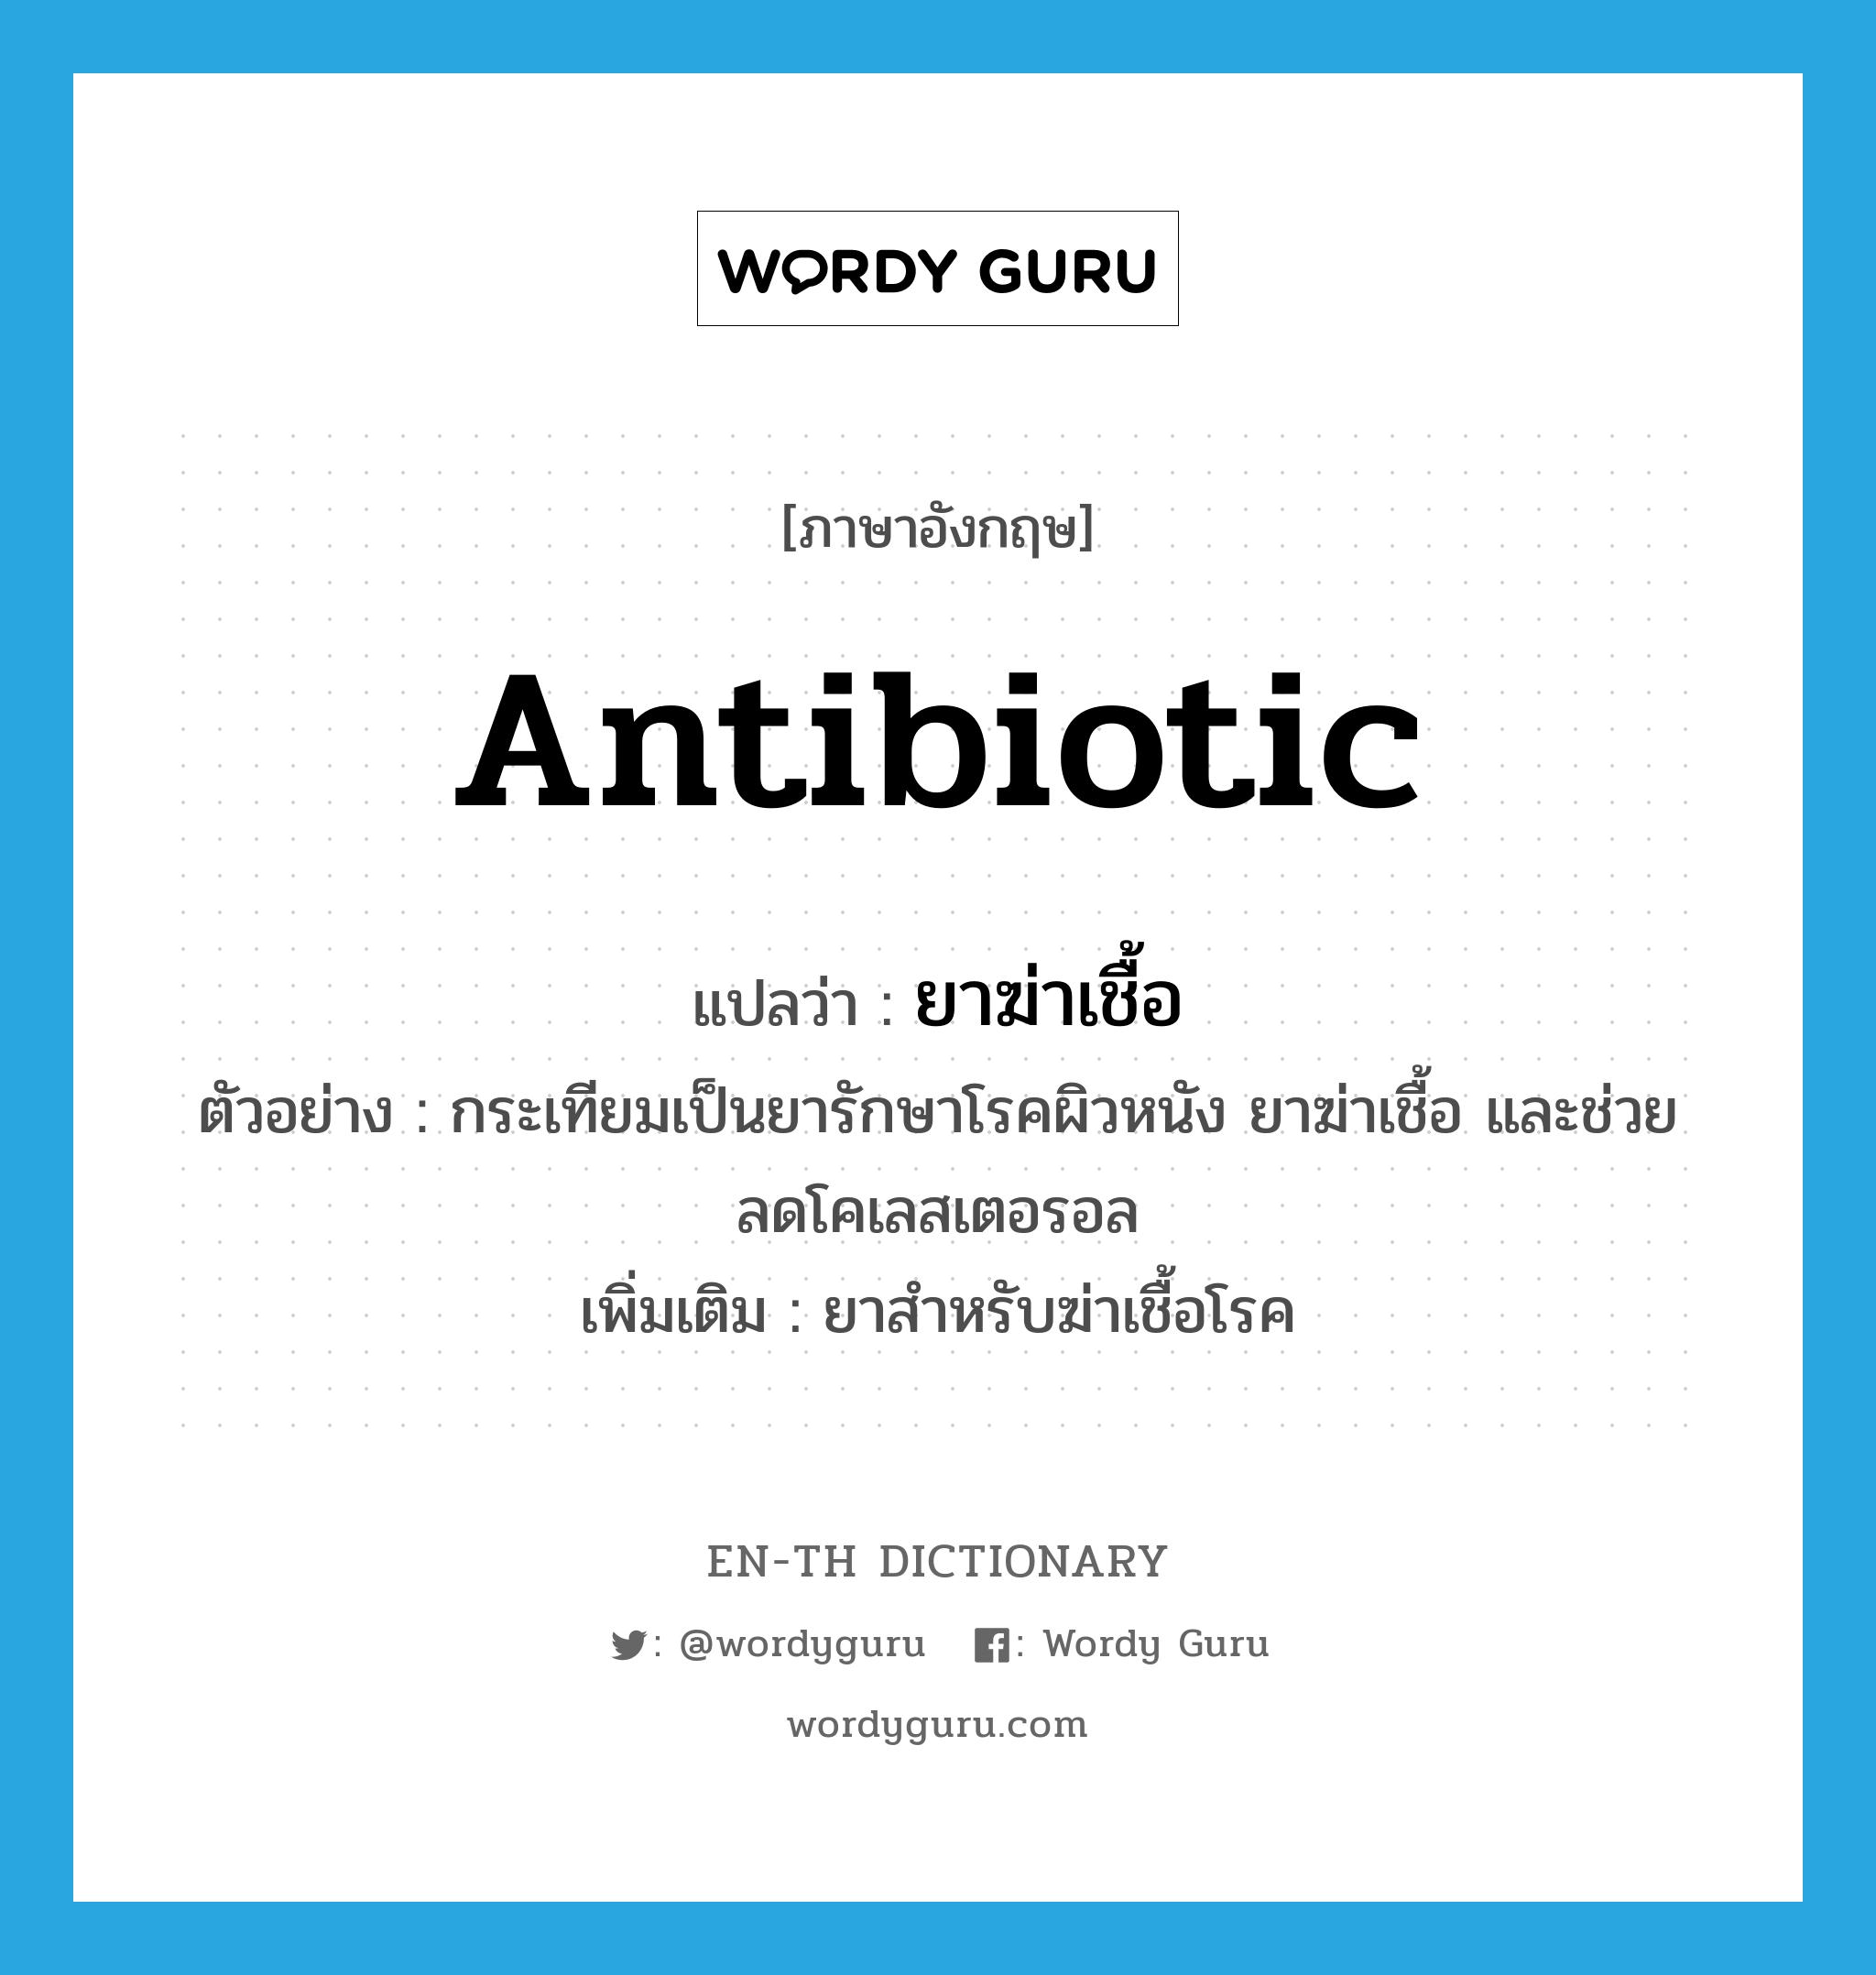 antibiotic แปลว่า?, คำศัพท์ภาษาอังกฤษ antibiotic แปลว่า ยาฆ่าเชื้อ ประเภท N ตัวอย่าง กระเทียมเป็นยารักษาโรคผิวหนัง ยาฆ่าเชื้อ และช่วยลดโคเลสเตอรอล เพิ่มเติม ยาสำหรับฆ่าเชื้อโรค หมวด N